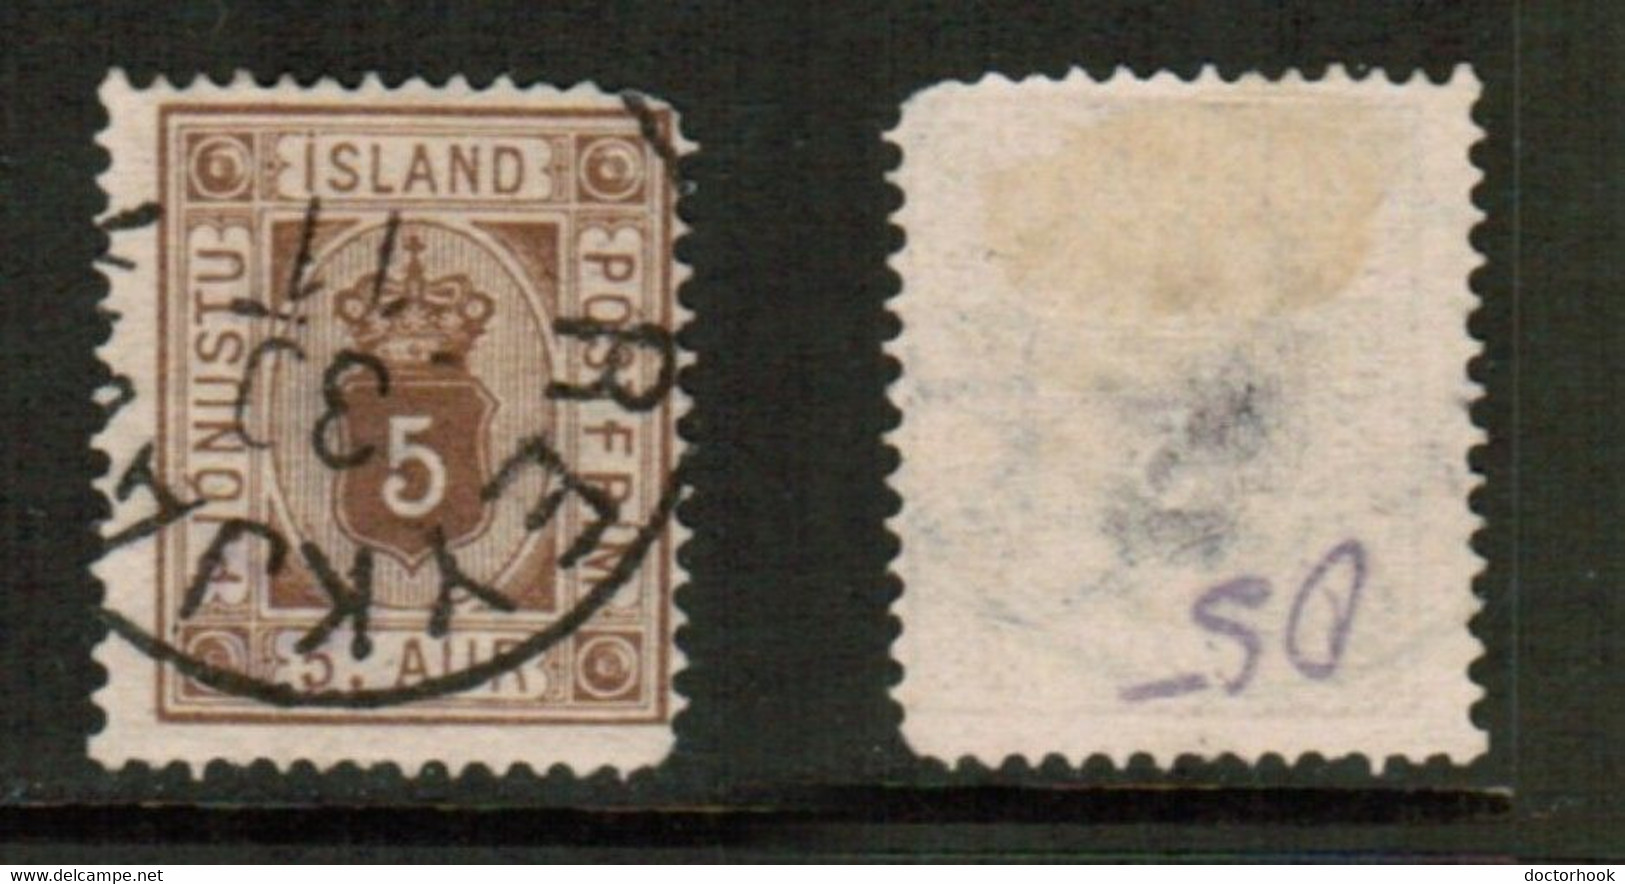 DENMARK   Scott # O 5 USED (CONDITION AS PER SCAN) (Stamp Scan # 867-18) - Dienstmarken